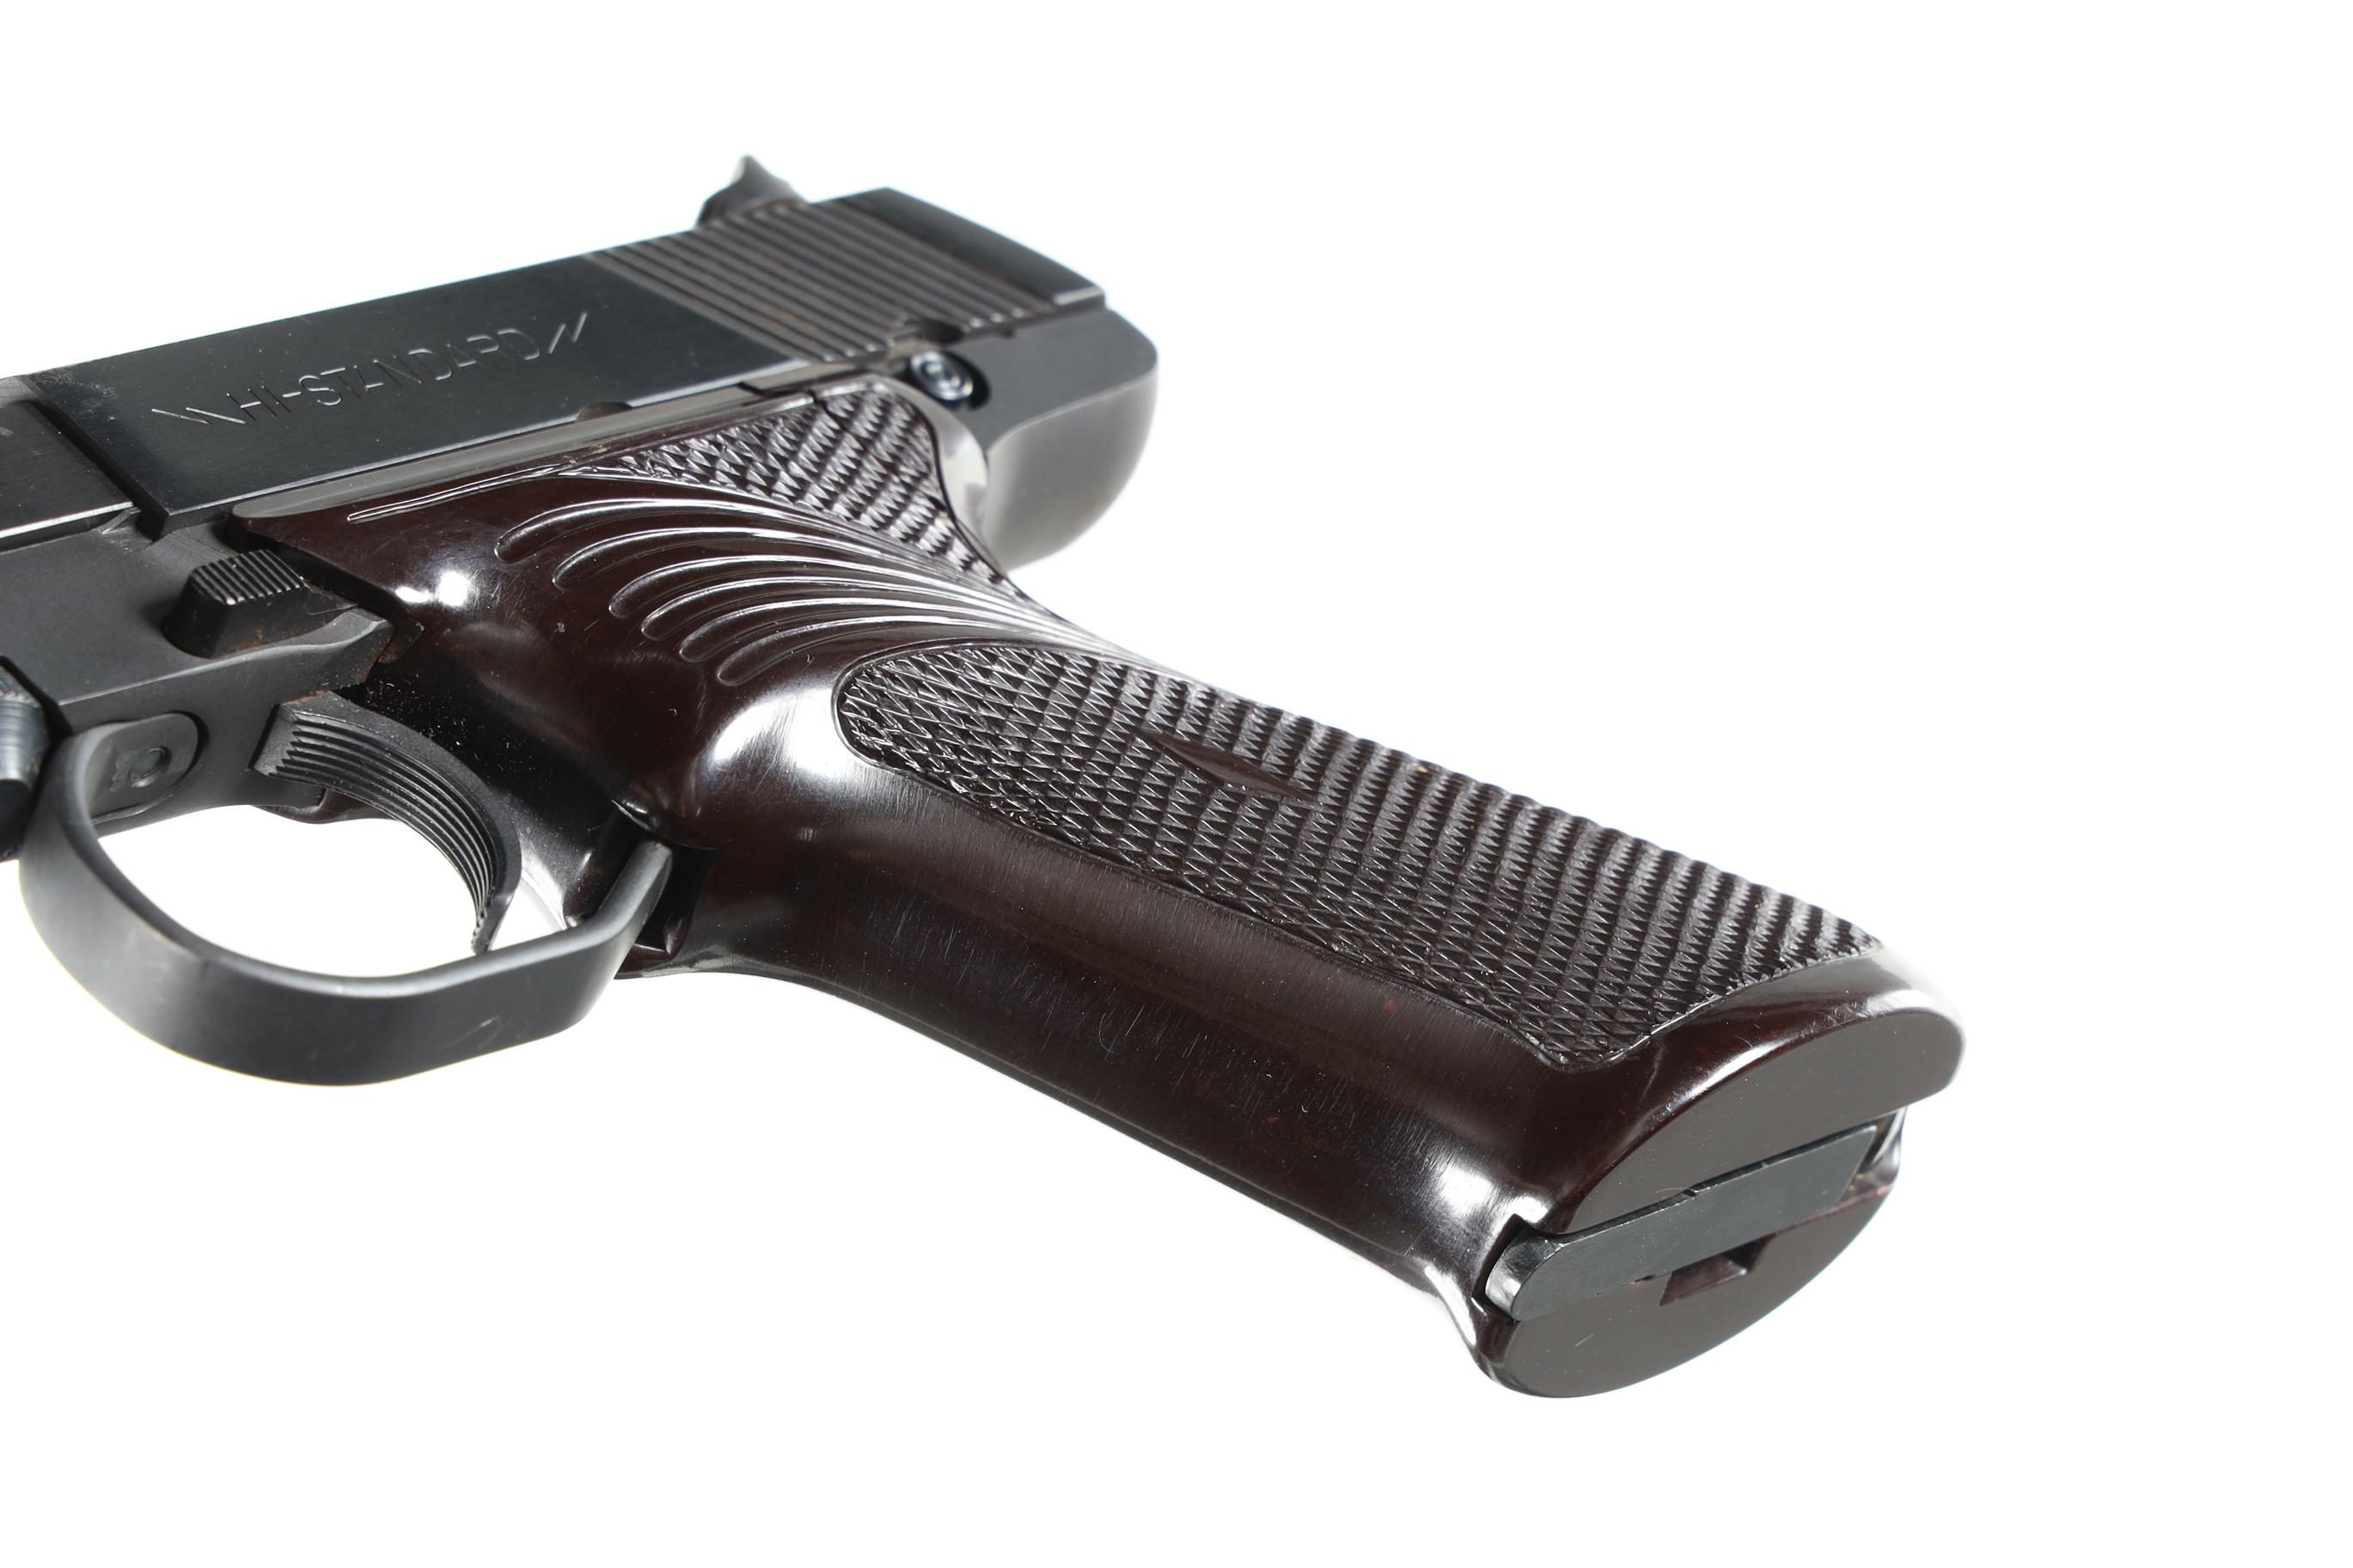 High Standard M101 Dura-Matic Pistol .22 lr